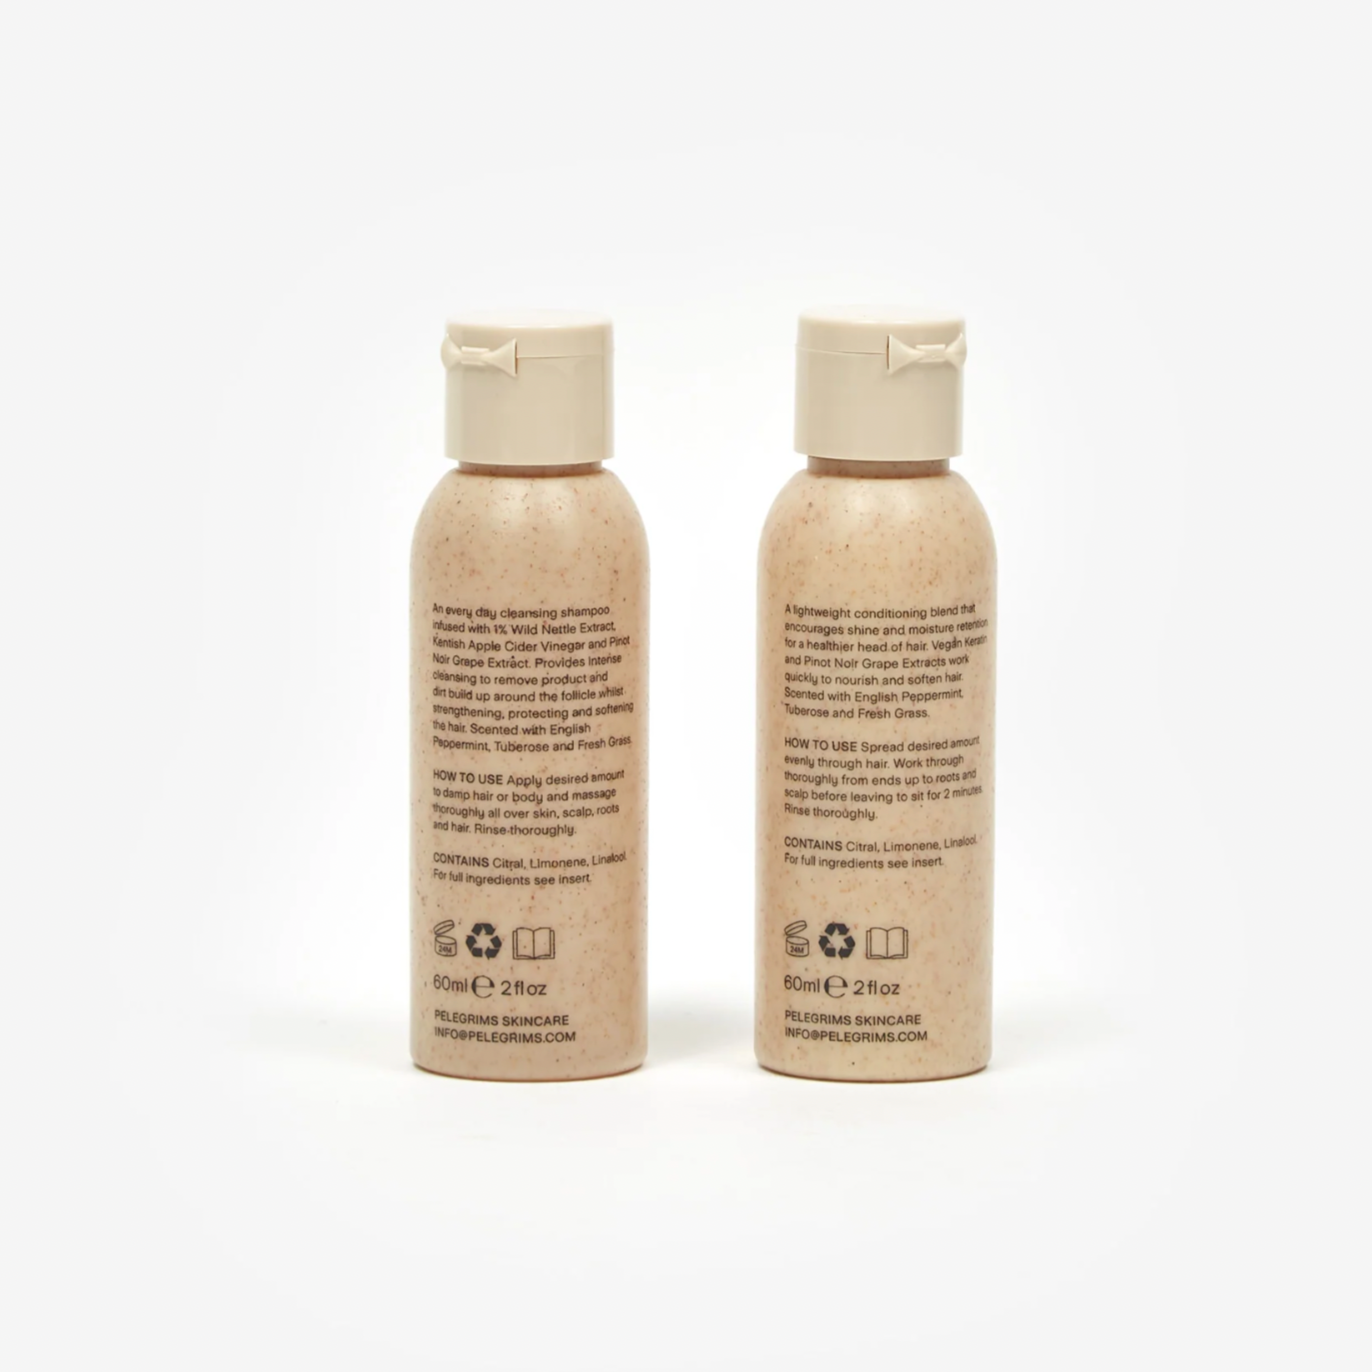 Pelegrims | Pelegrims - Shampoo & Conditioner Duo Set - 2 x 60ml